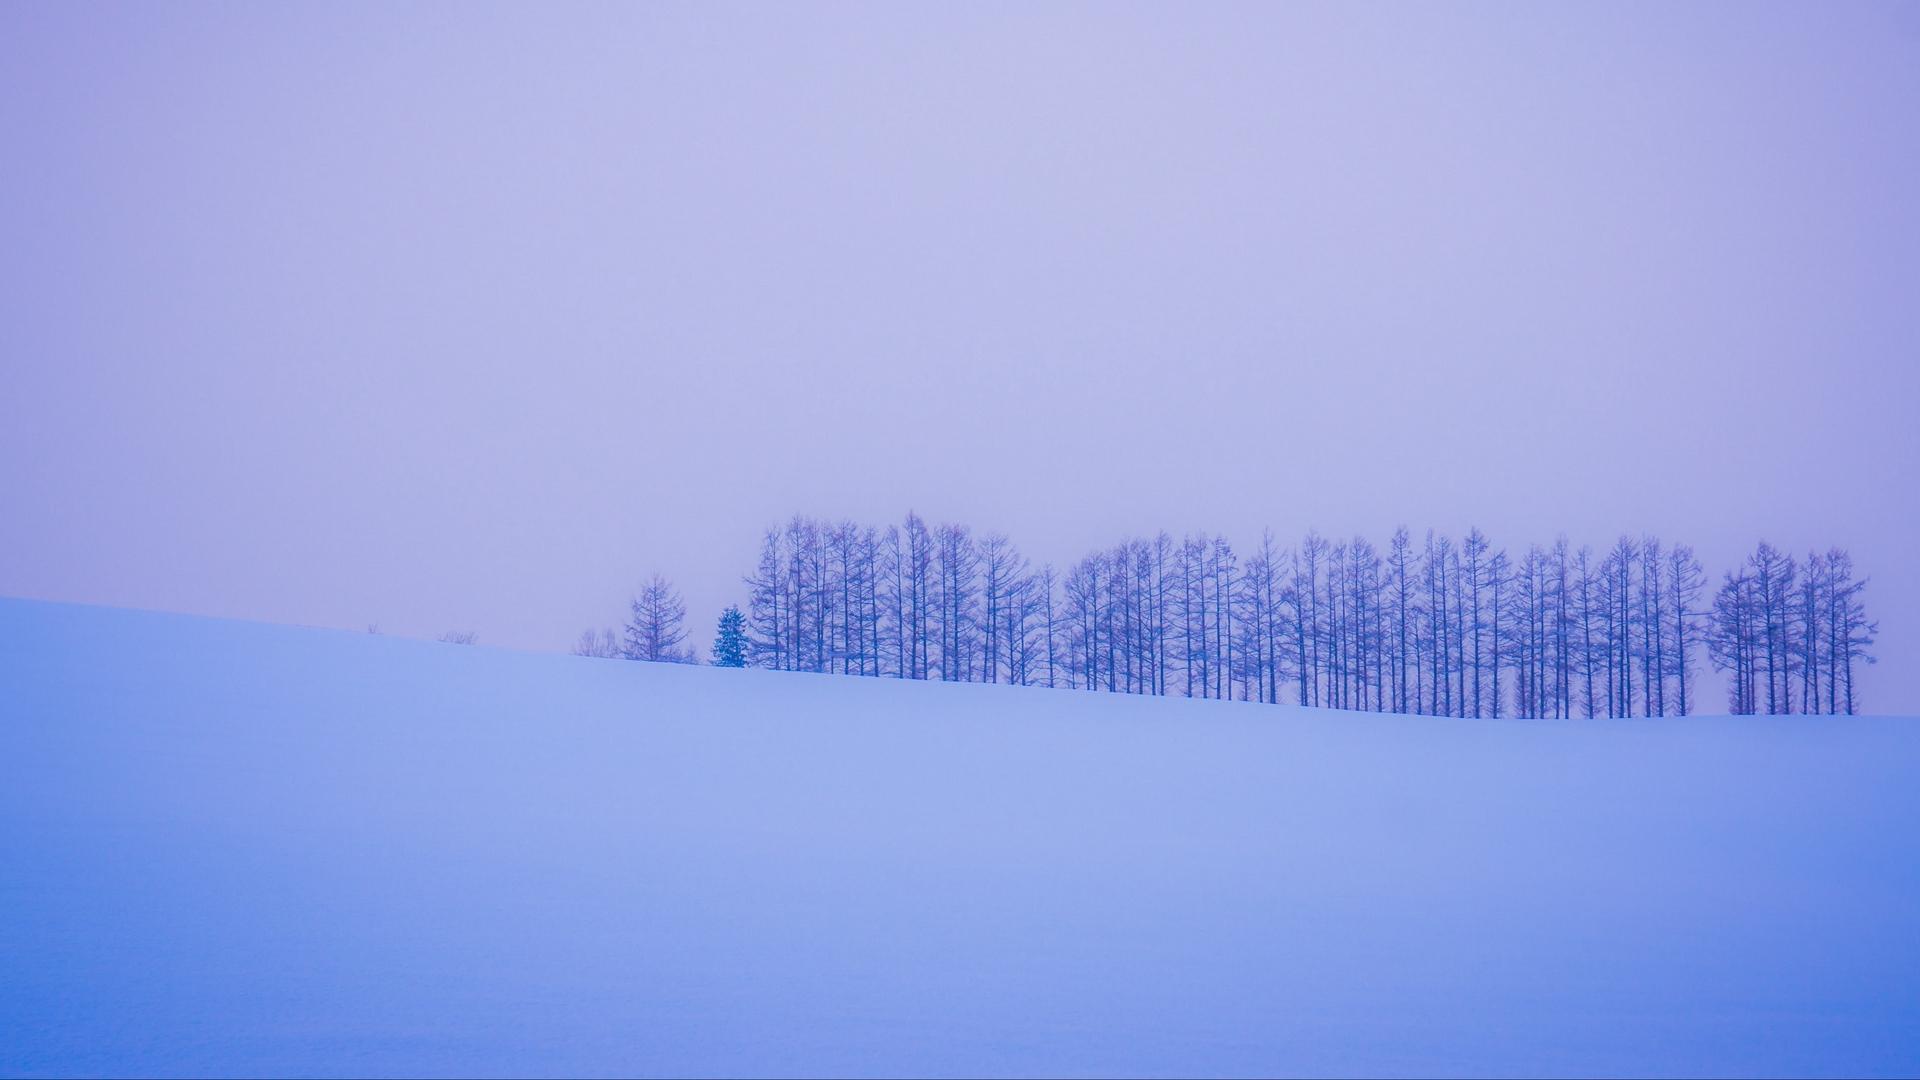 Download wallpaper 1920x1080 trees, snow, winter, minimalism